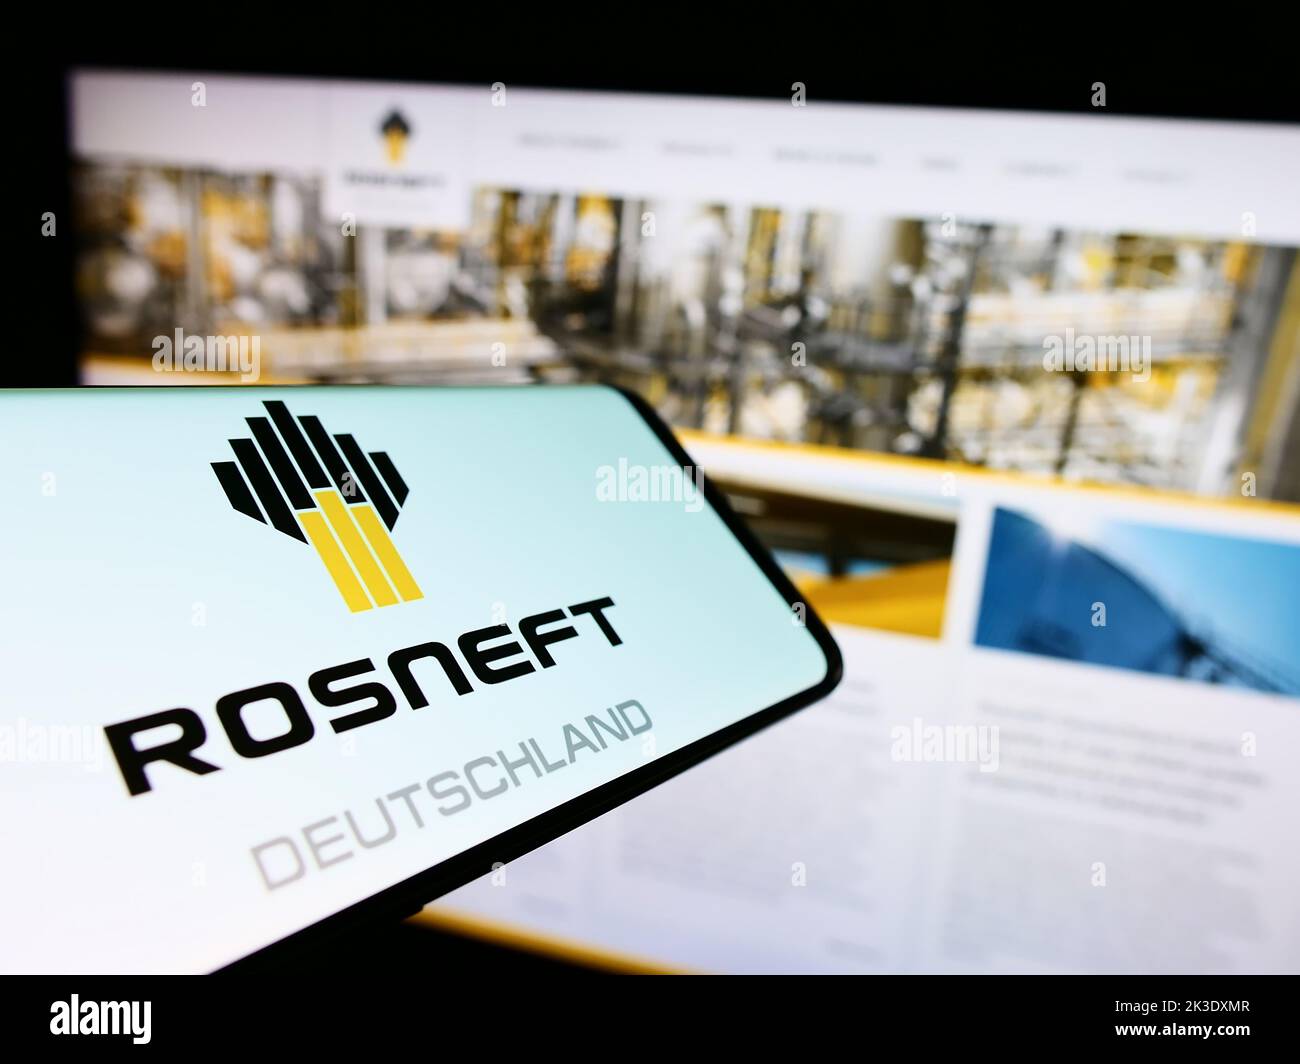 Cellulare con logo della società di raffinazione dell'olio Rosneft Deutschland GmbH sullo schermo di fronte al sito web. Messa a fuoco al centro a destra del display del telefono. Foto Stock